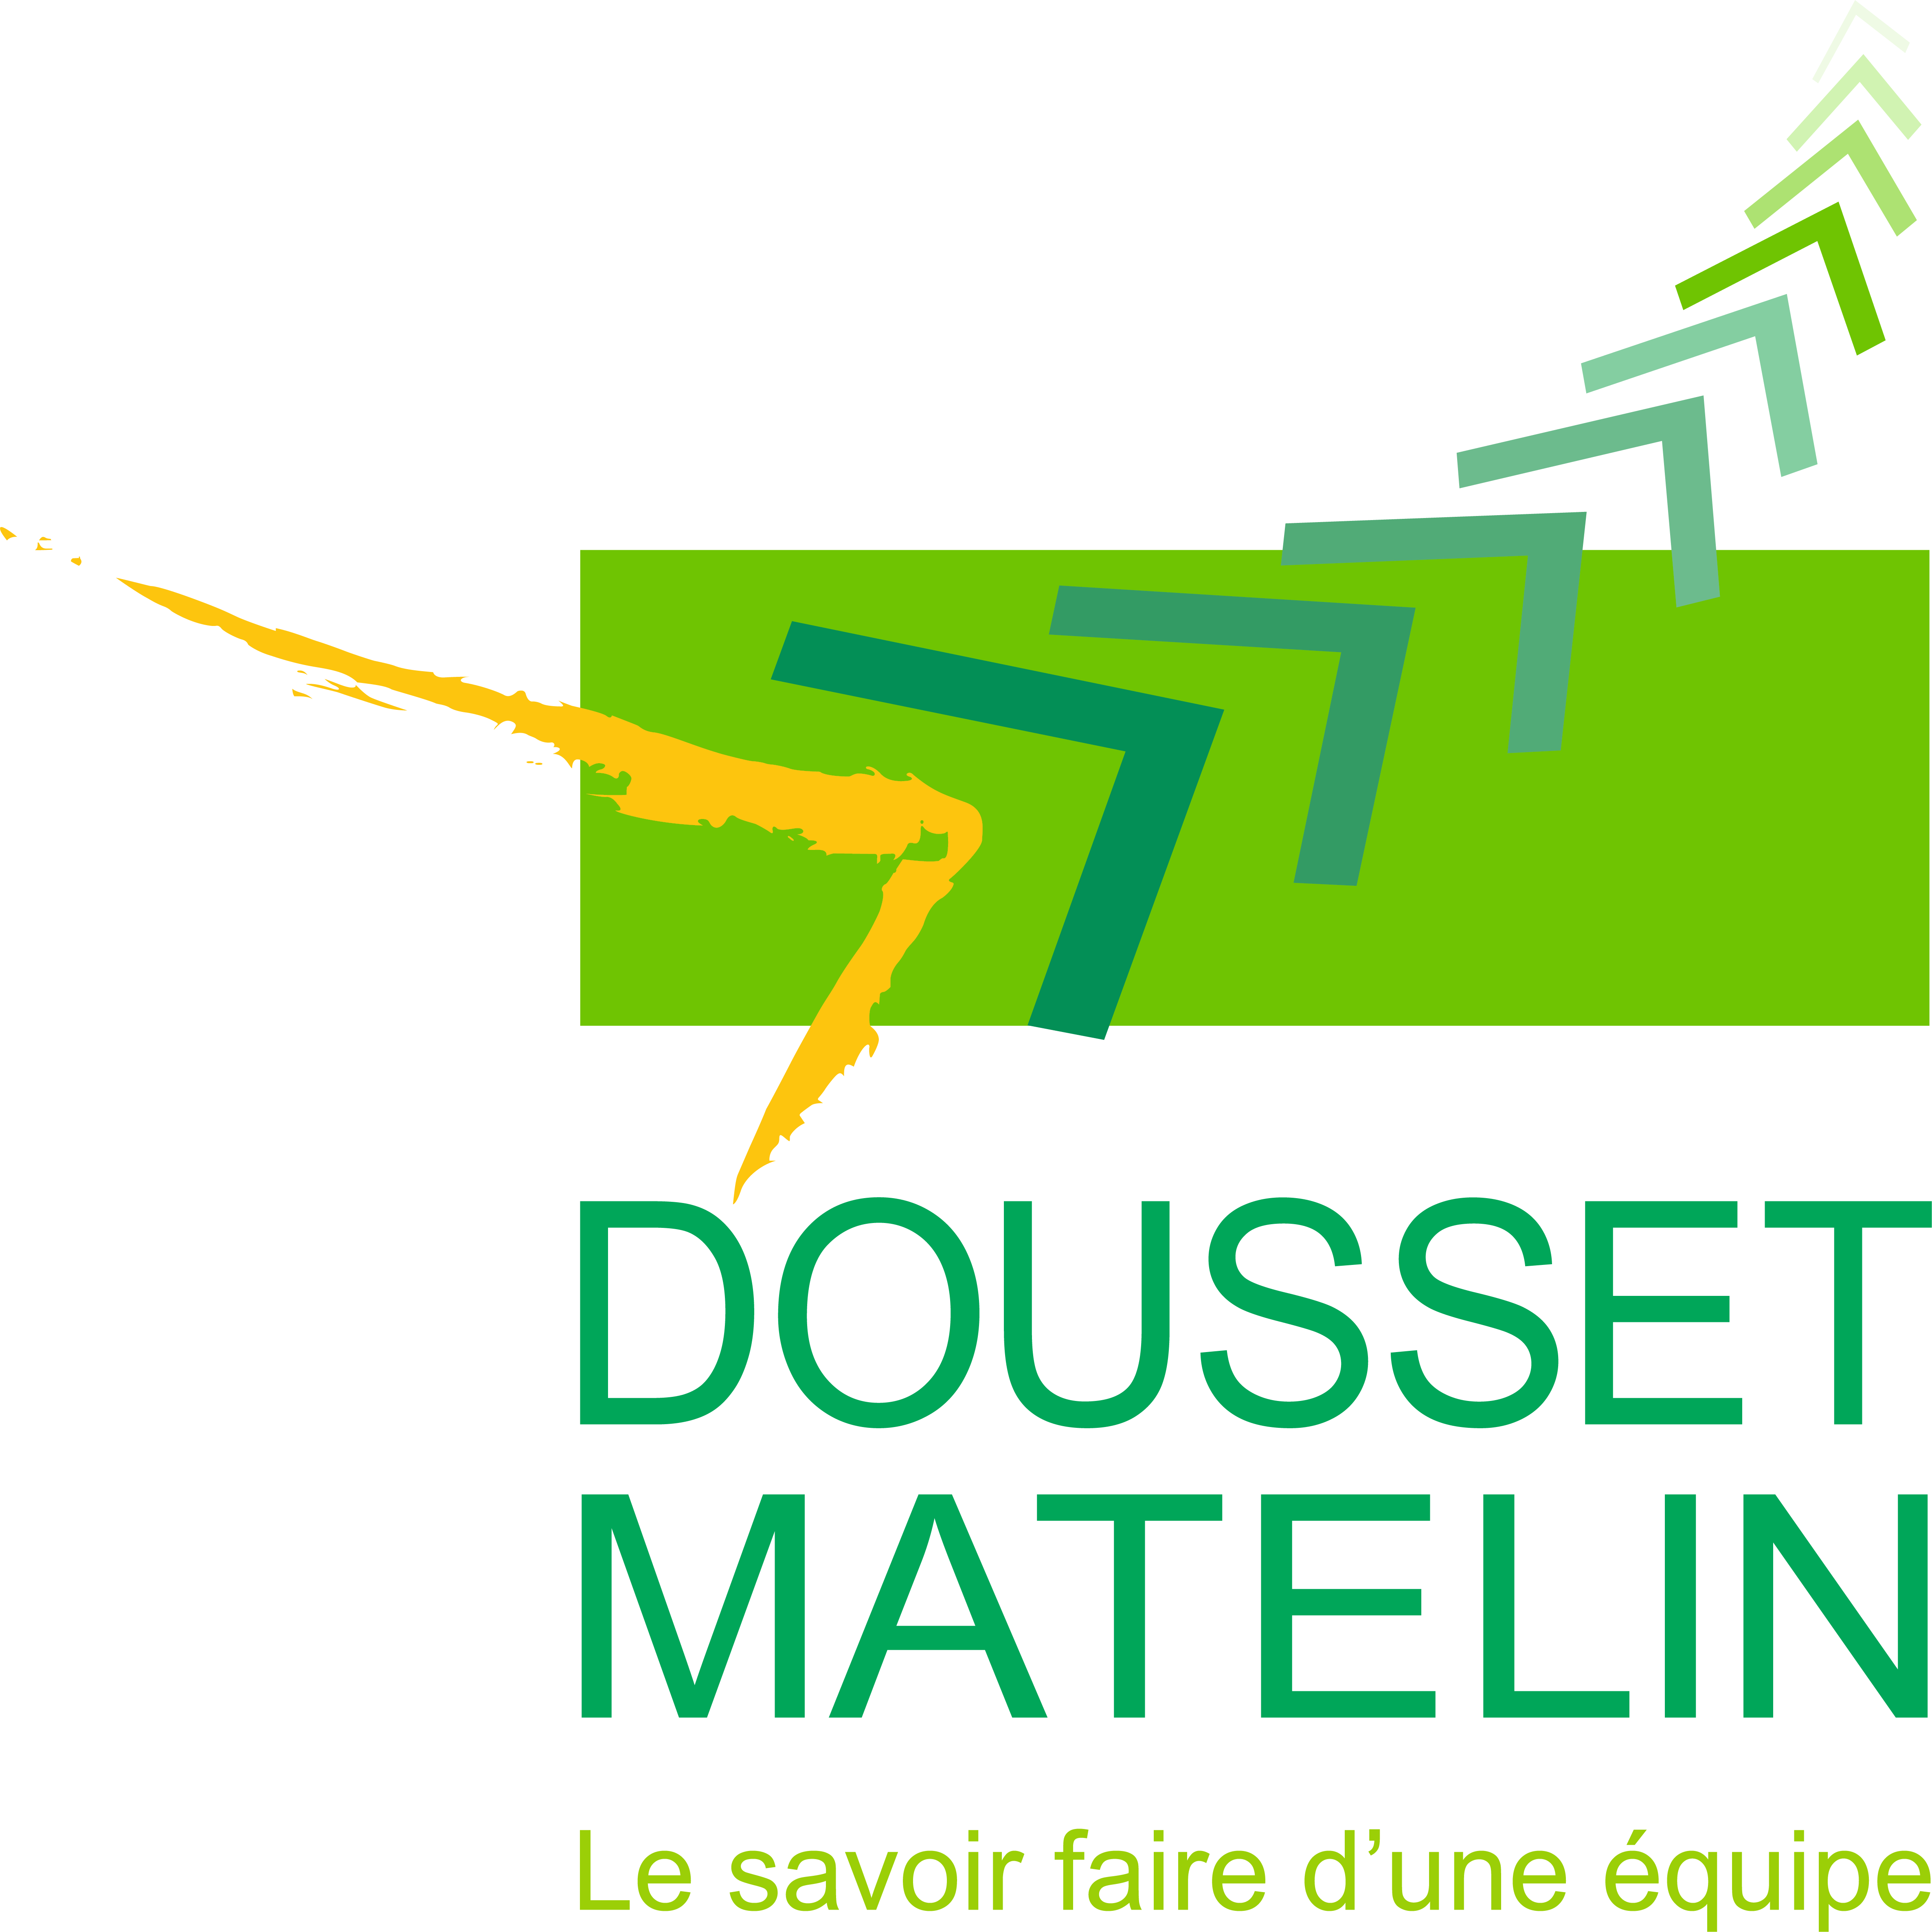 DOUSSET MATELIN